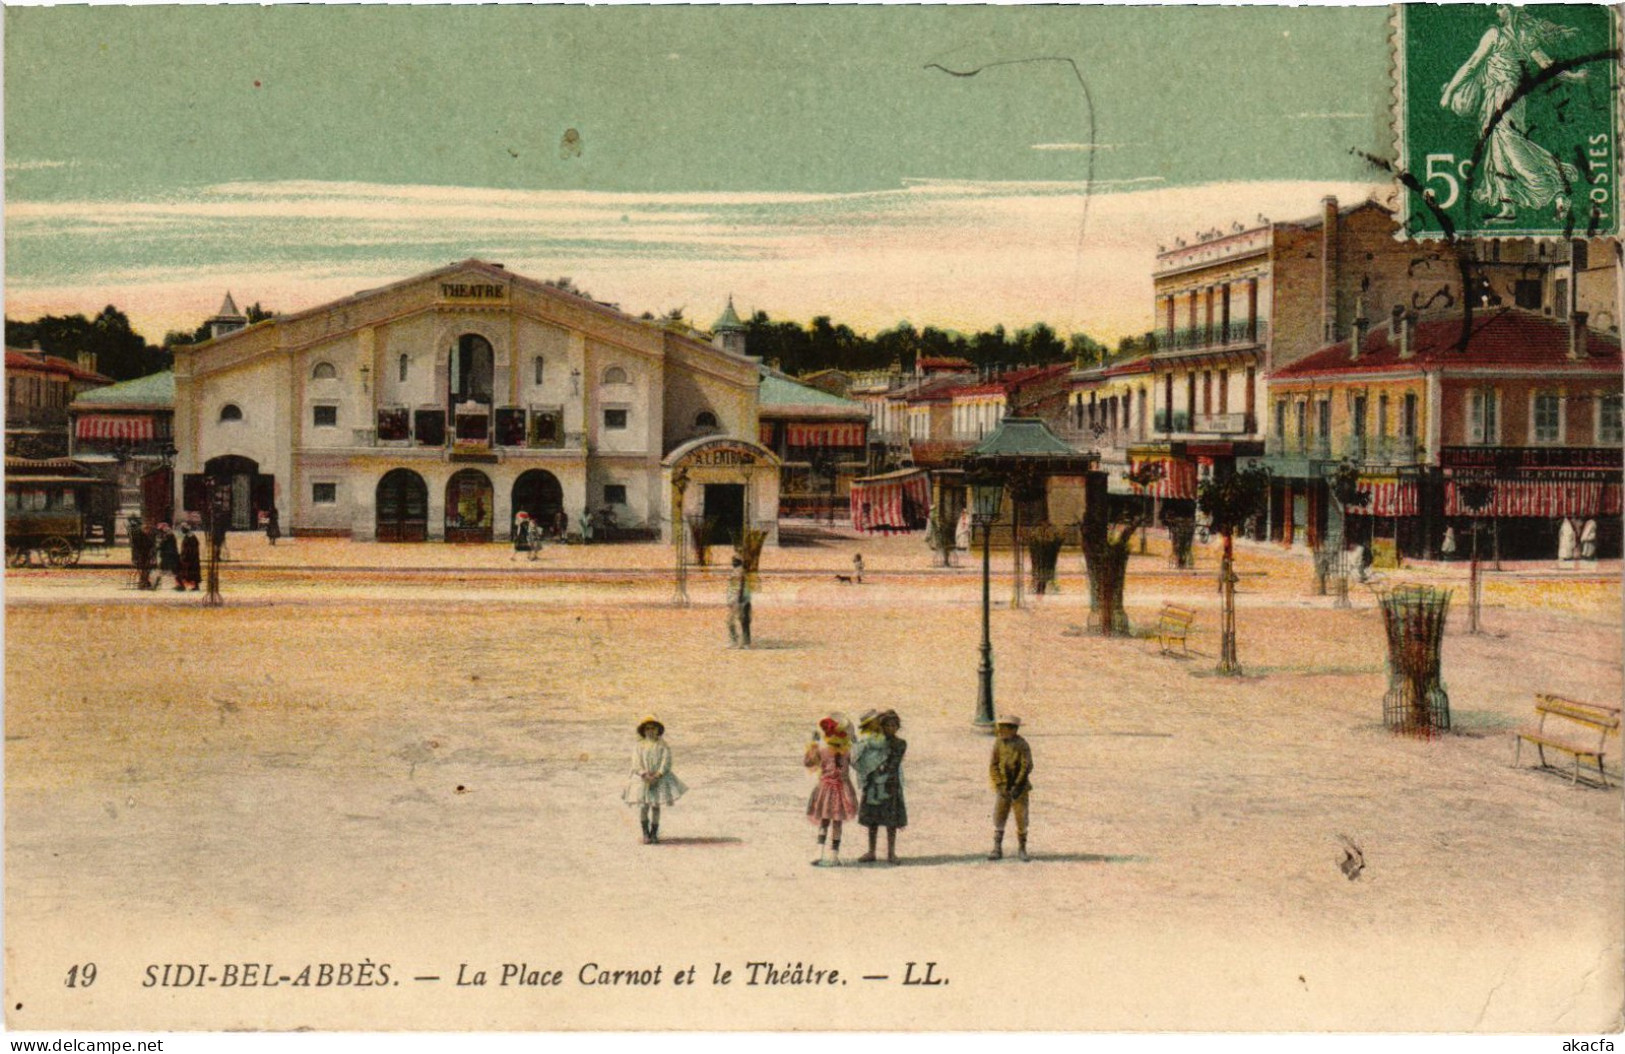 CPA AK SIDI-BEL-ABBES Place Carnot - Theatre ALGERIA (1389597) - Sidi-bel-Abbès